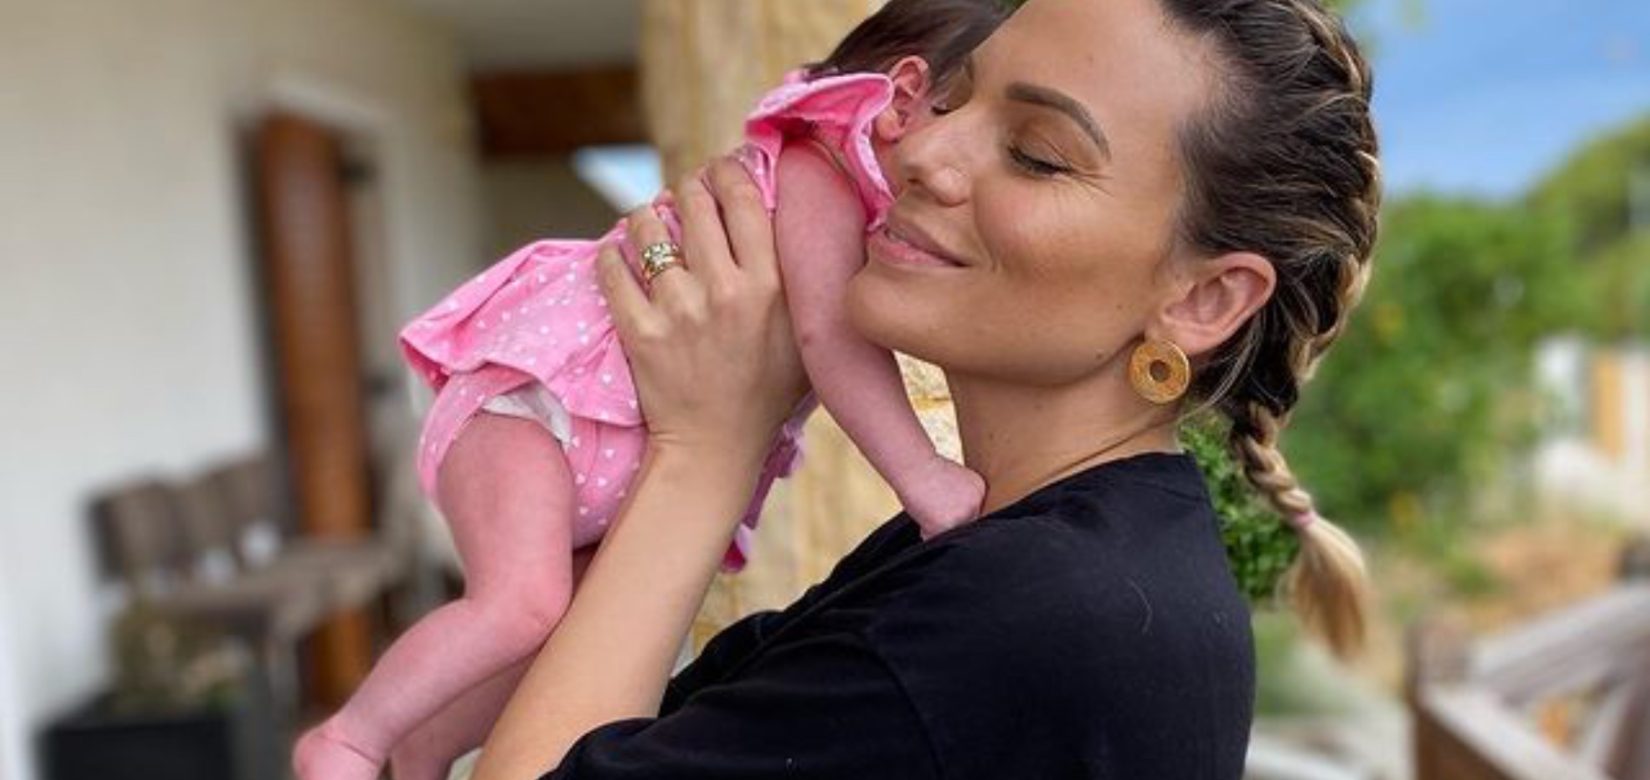 Ιωάννα Μαλέσκου: Ποζάρει αγκαλιά με τη νεογέννητη κόρη της και αποκαλύπτει το... φίλτρο που χρησιμοποιεί